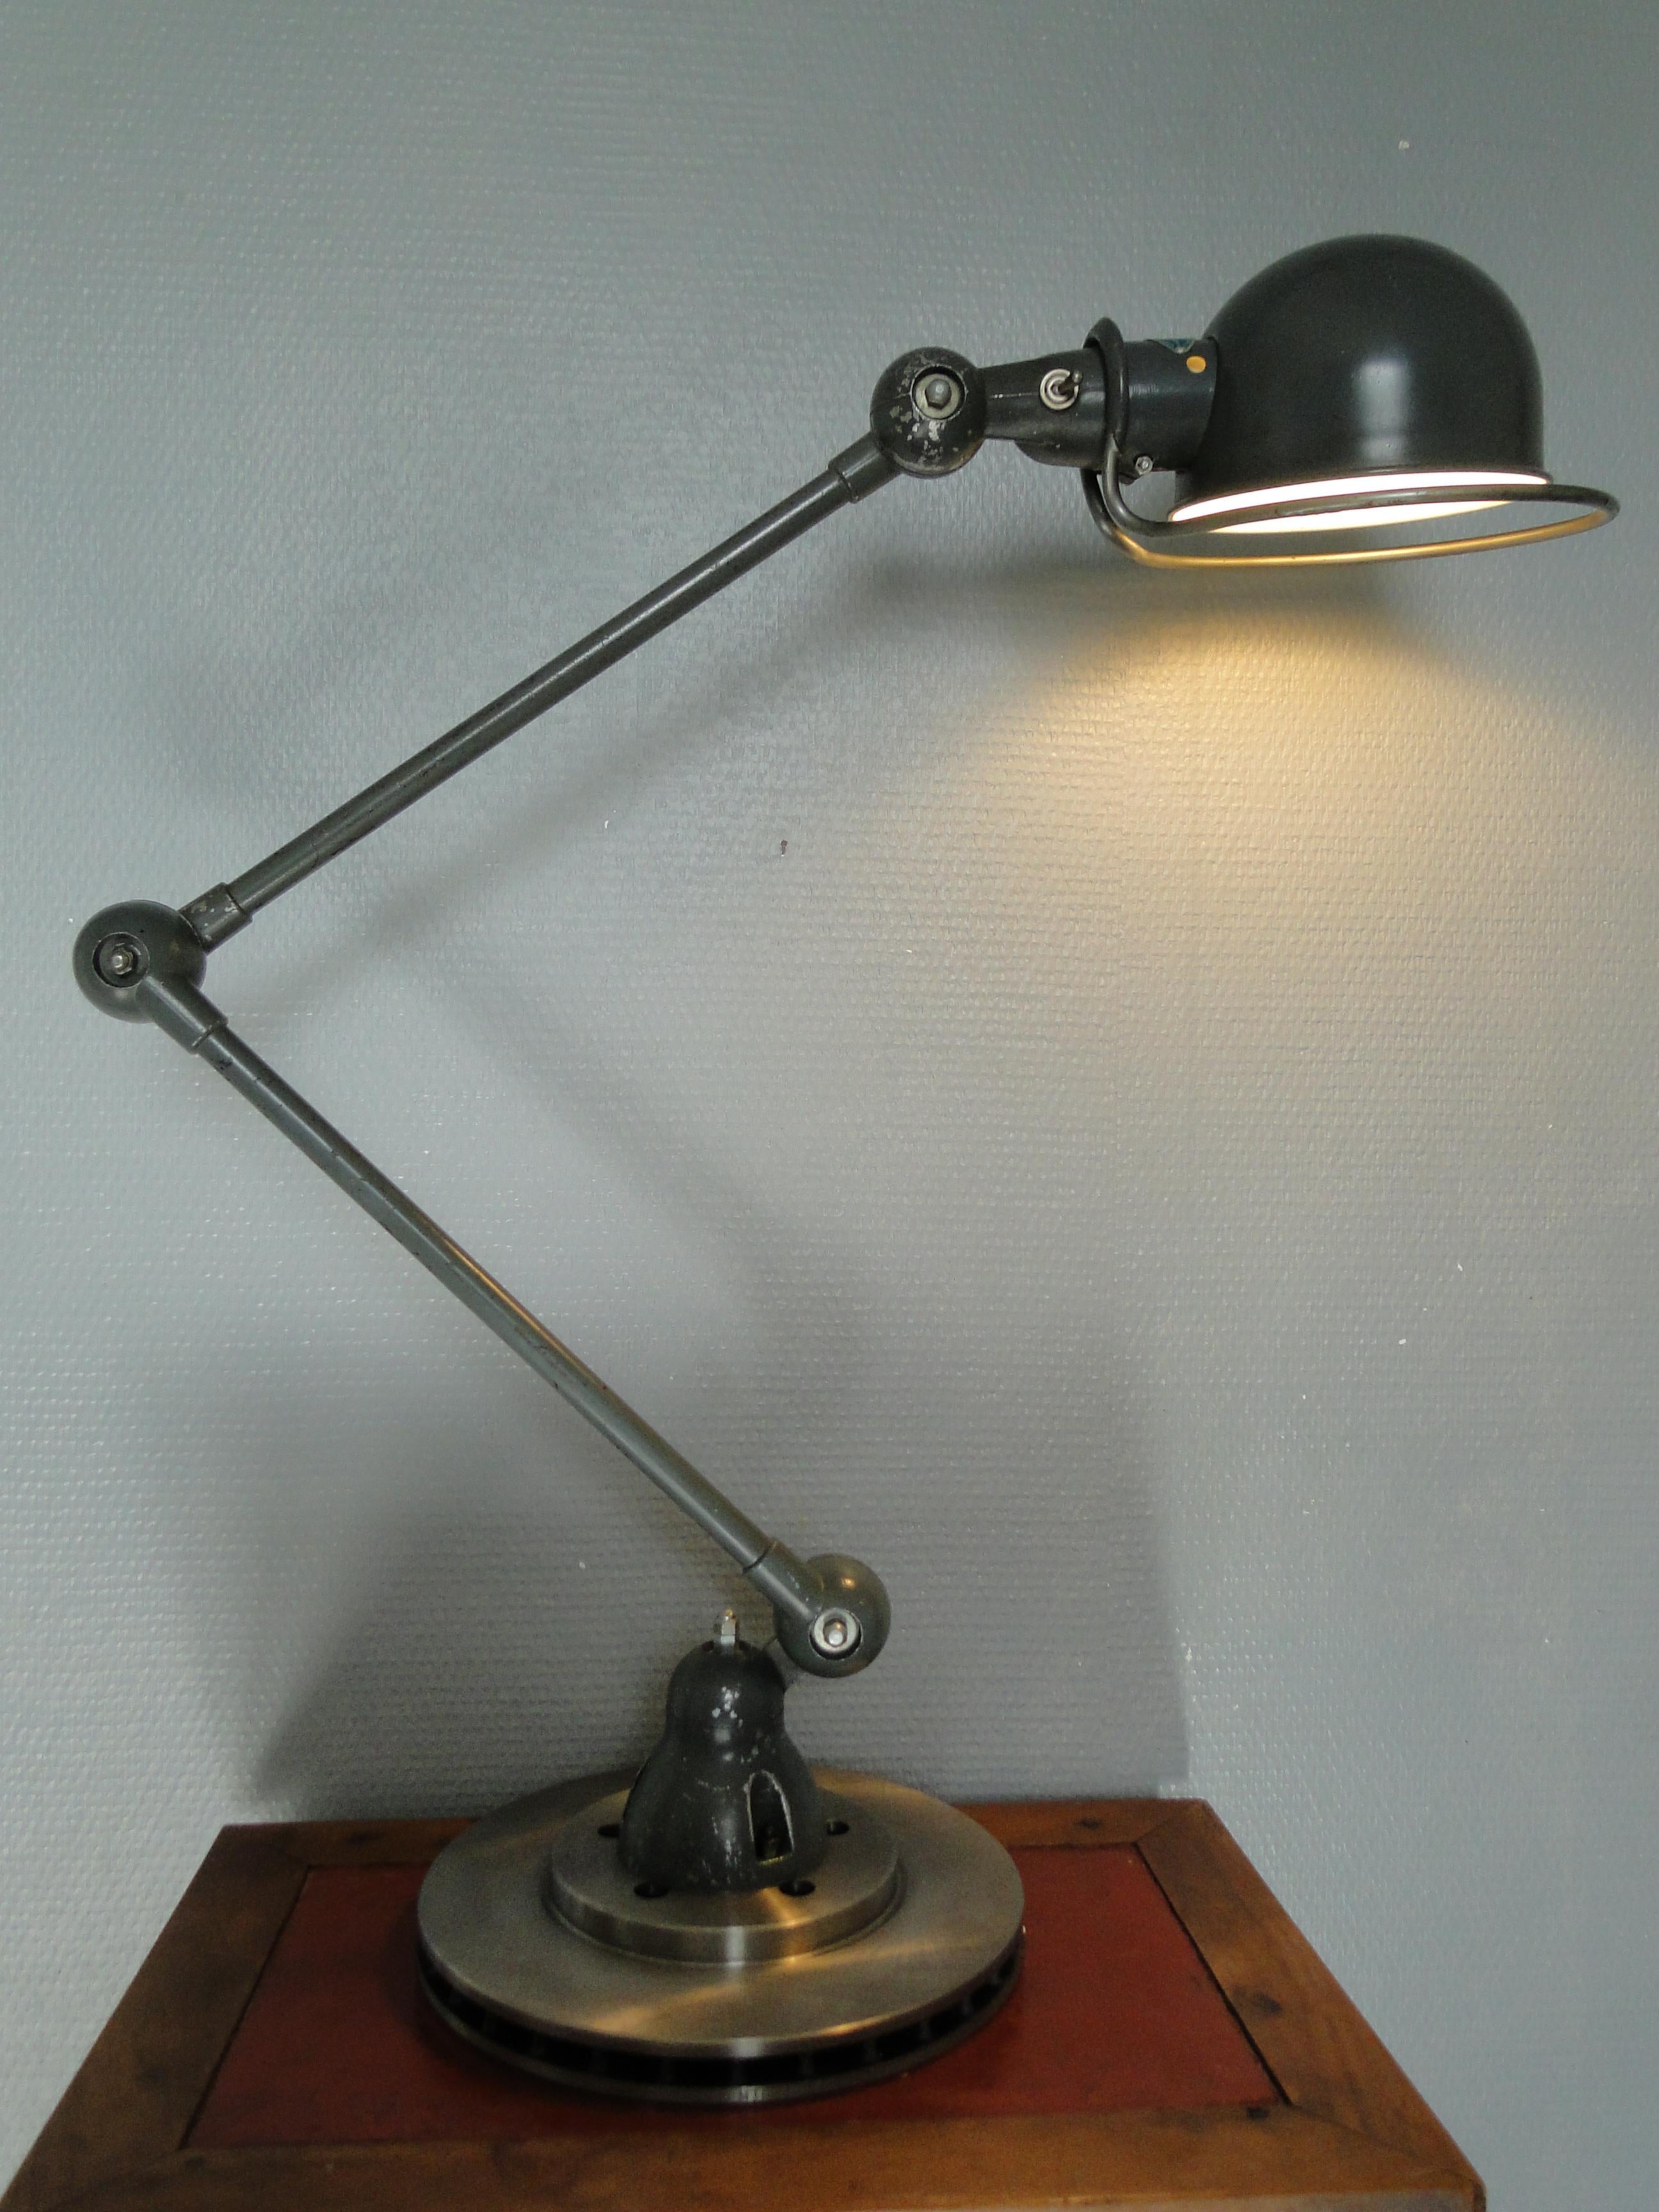 2 bewaffnete JIELDE Lampe Leselampe Französisch Industrielampe

Entworfen von Jean-Louis Domecq in den frühen 1950er Jahren

ORIGINAL Jielde Lampe

Die Lampe steht auf einer neuen belüfteten Bremsscheibe, die beste Stabilität garantiert

Die